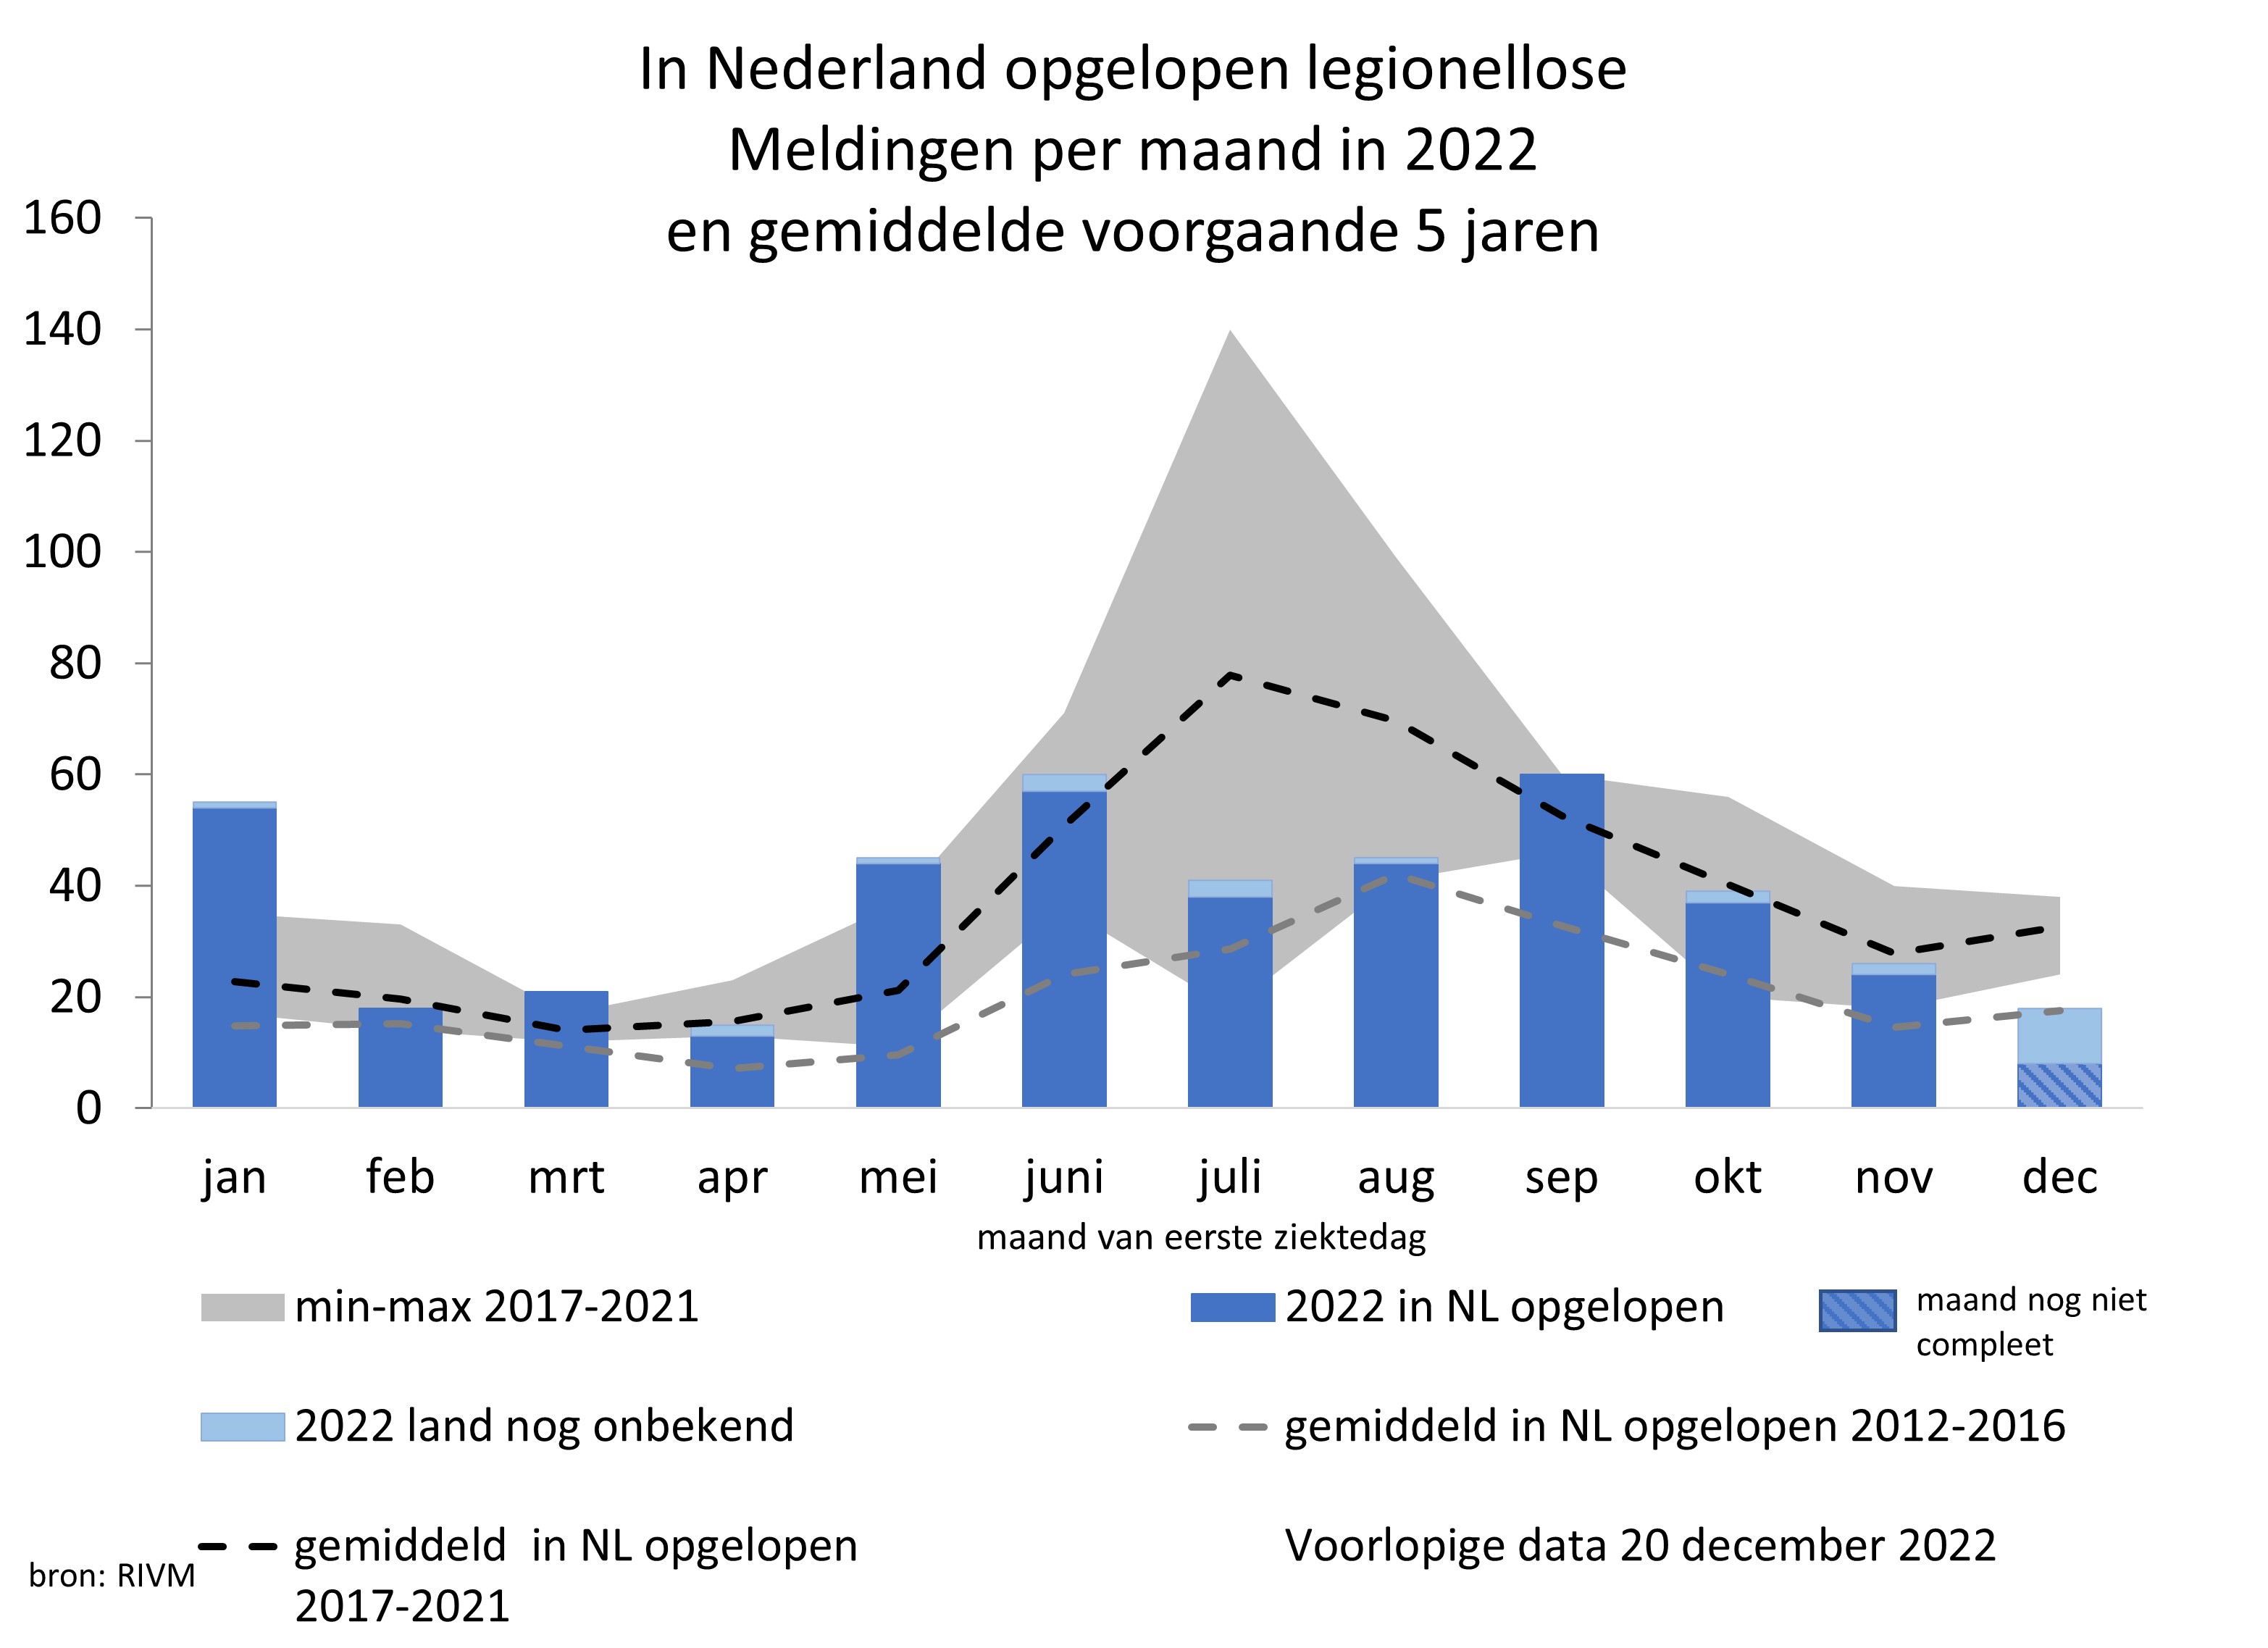 Aantal  legionellosemeldingen in het lopende jaar waarbij de infectie in Nederland werd opgelopen en het gemiddelde aantal in Nederland opgelopen meldingen in de voorgaande vijf jaar (2017-2021) en de vijf jaar daarvoor (2012-2016).